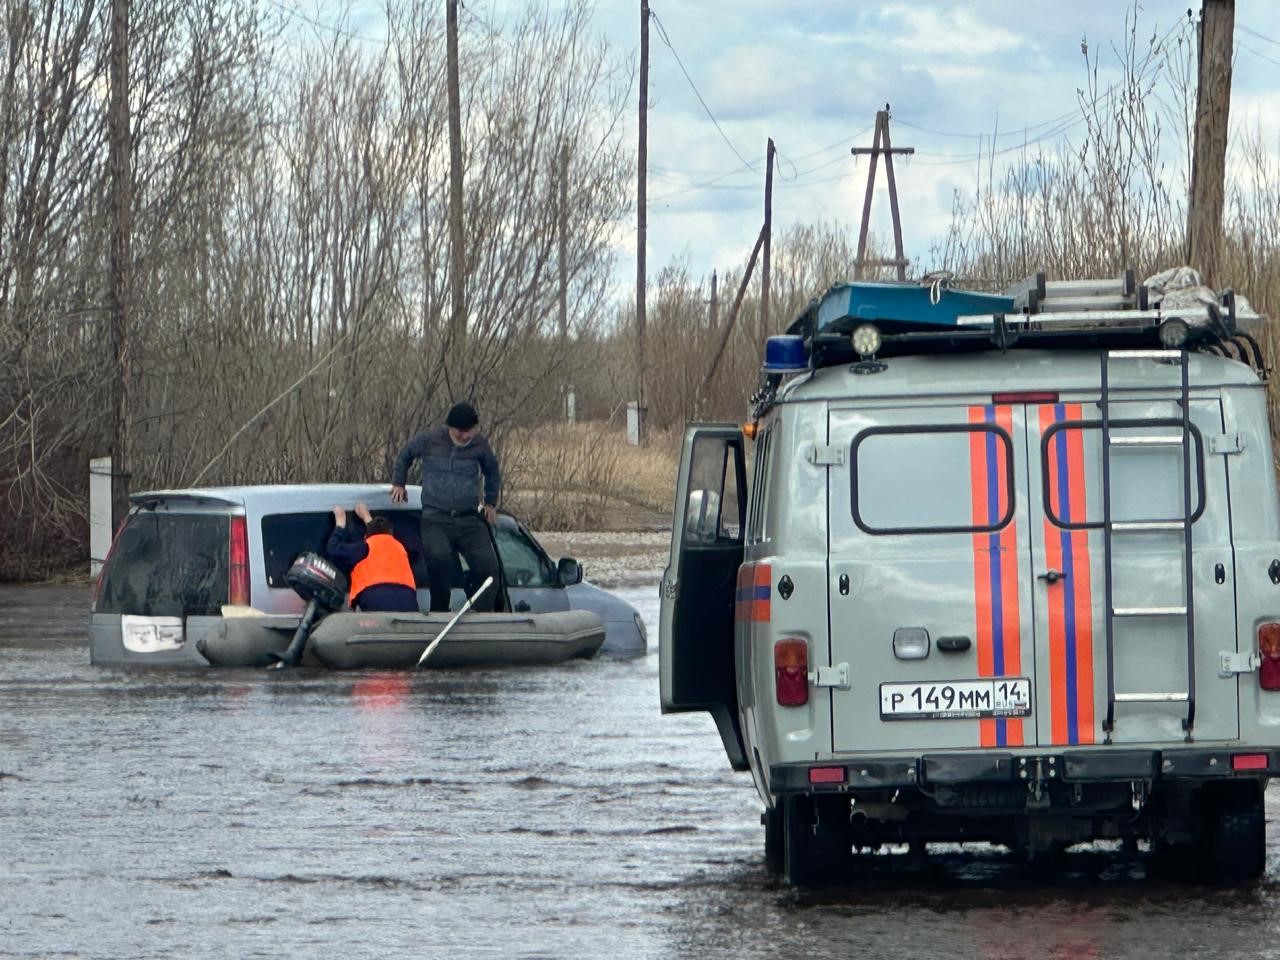 Помощь спасателей потребовалась автомобилистам, застрявшим в ручье в Якутске